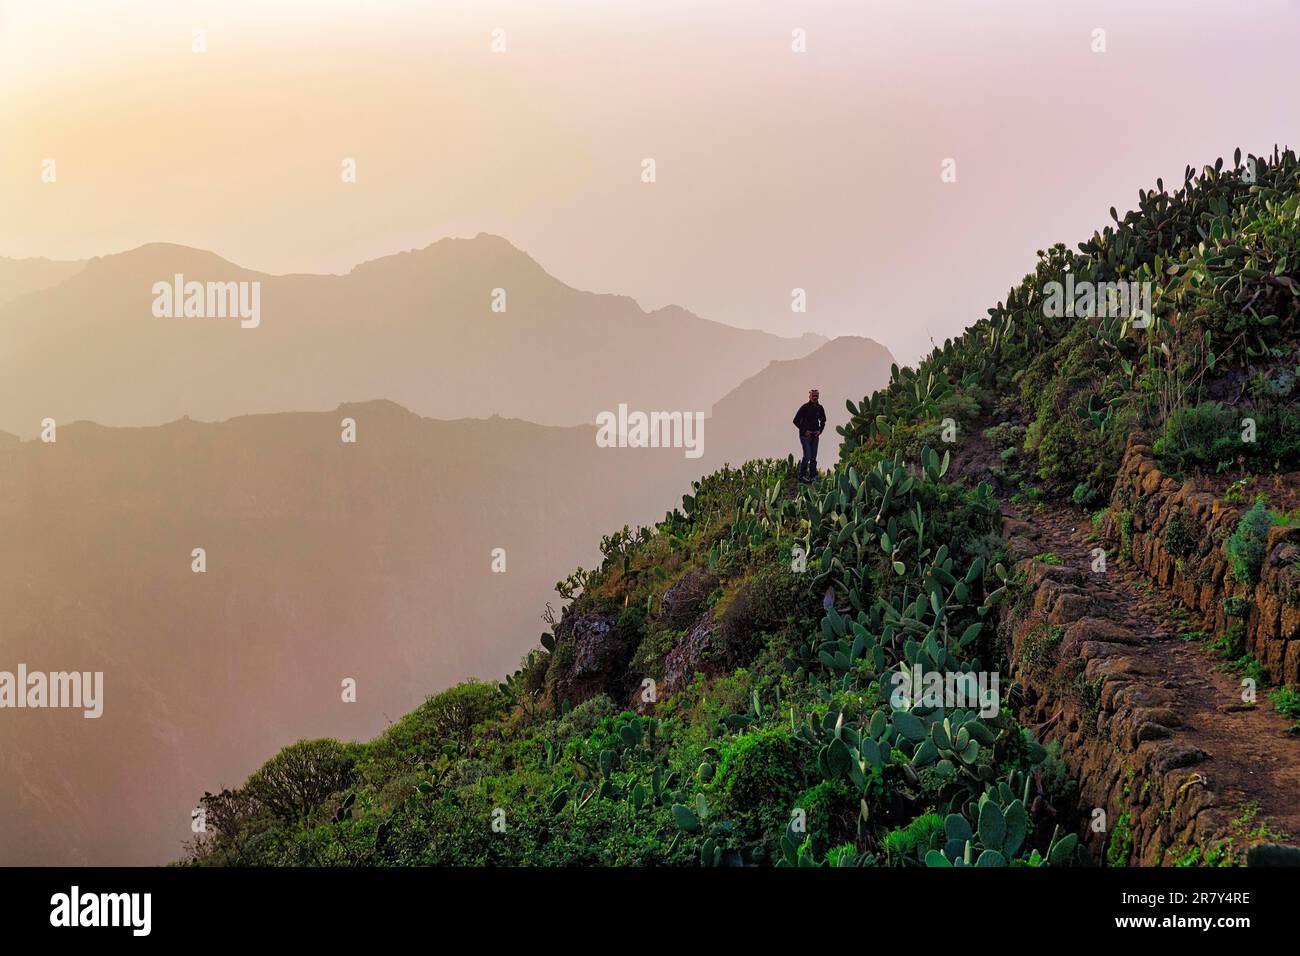 Sentiero escursionistico, escursionisti tra opuntias sulla collina, catene montuose all'orizzonte, retroilluminazione, Anaga Mountains parco naturale, San Cristobal de Foto Stock